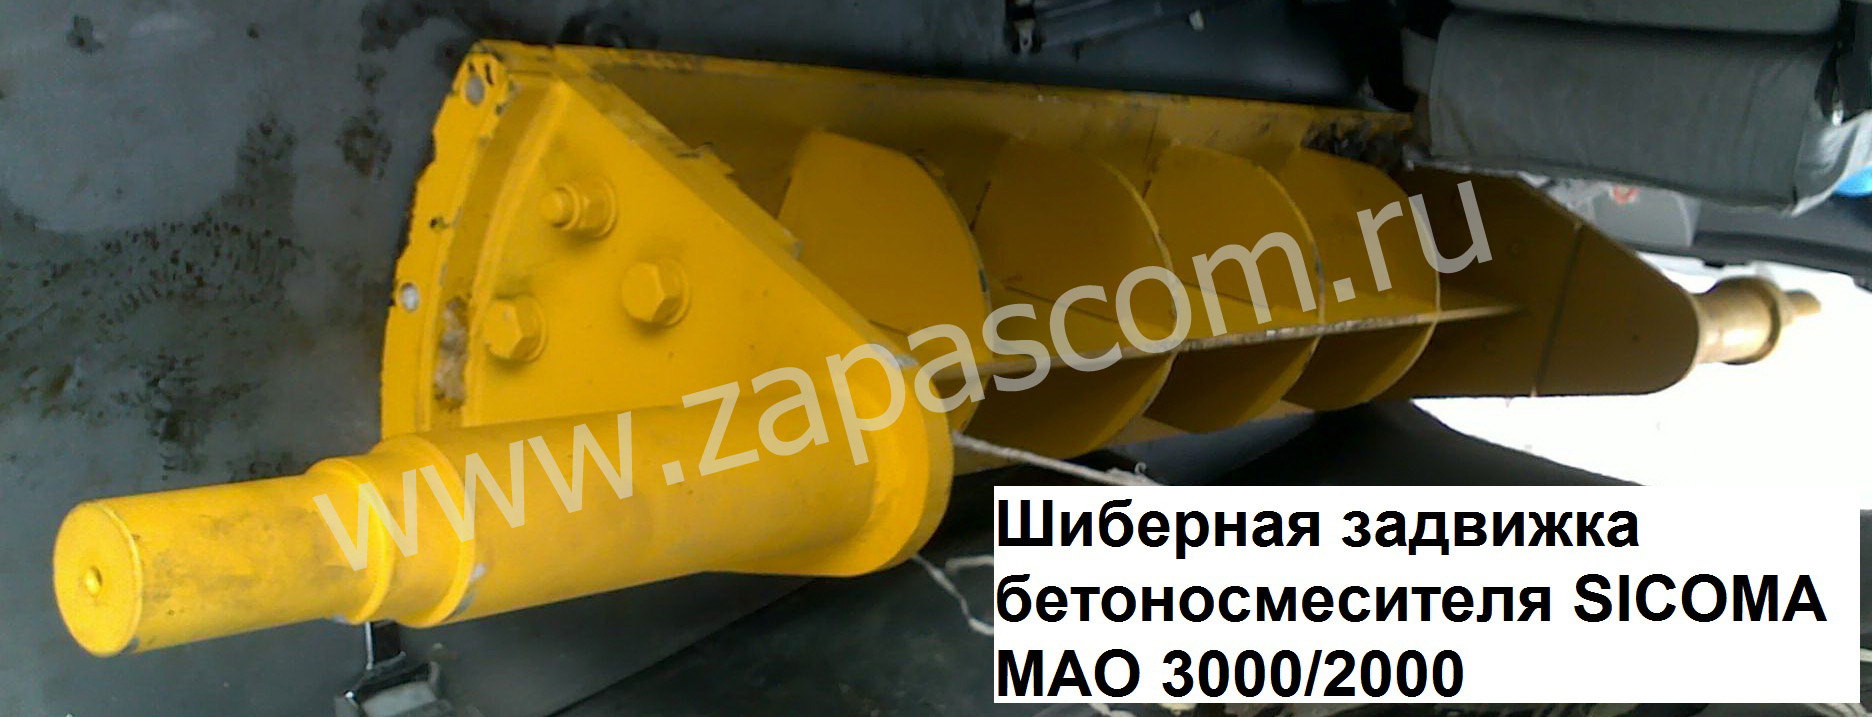 Шиберная задвижка бетоносмесителя SICOMA МАО 3000-2000 (с сайтом).jpg